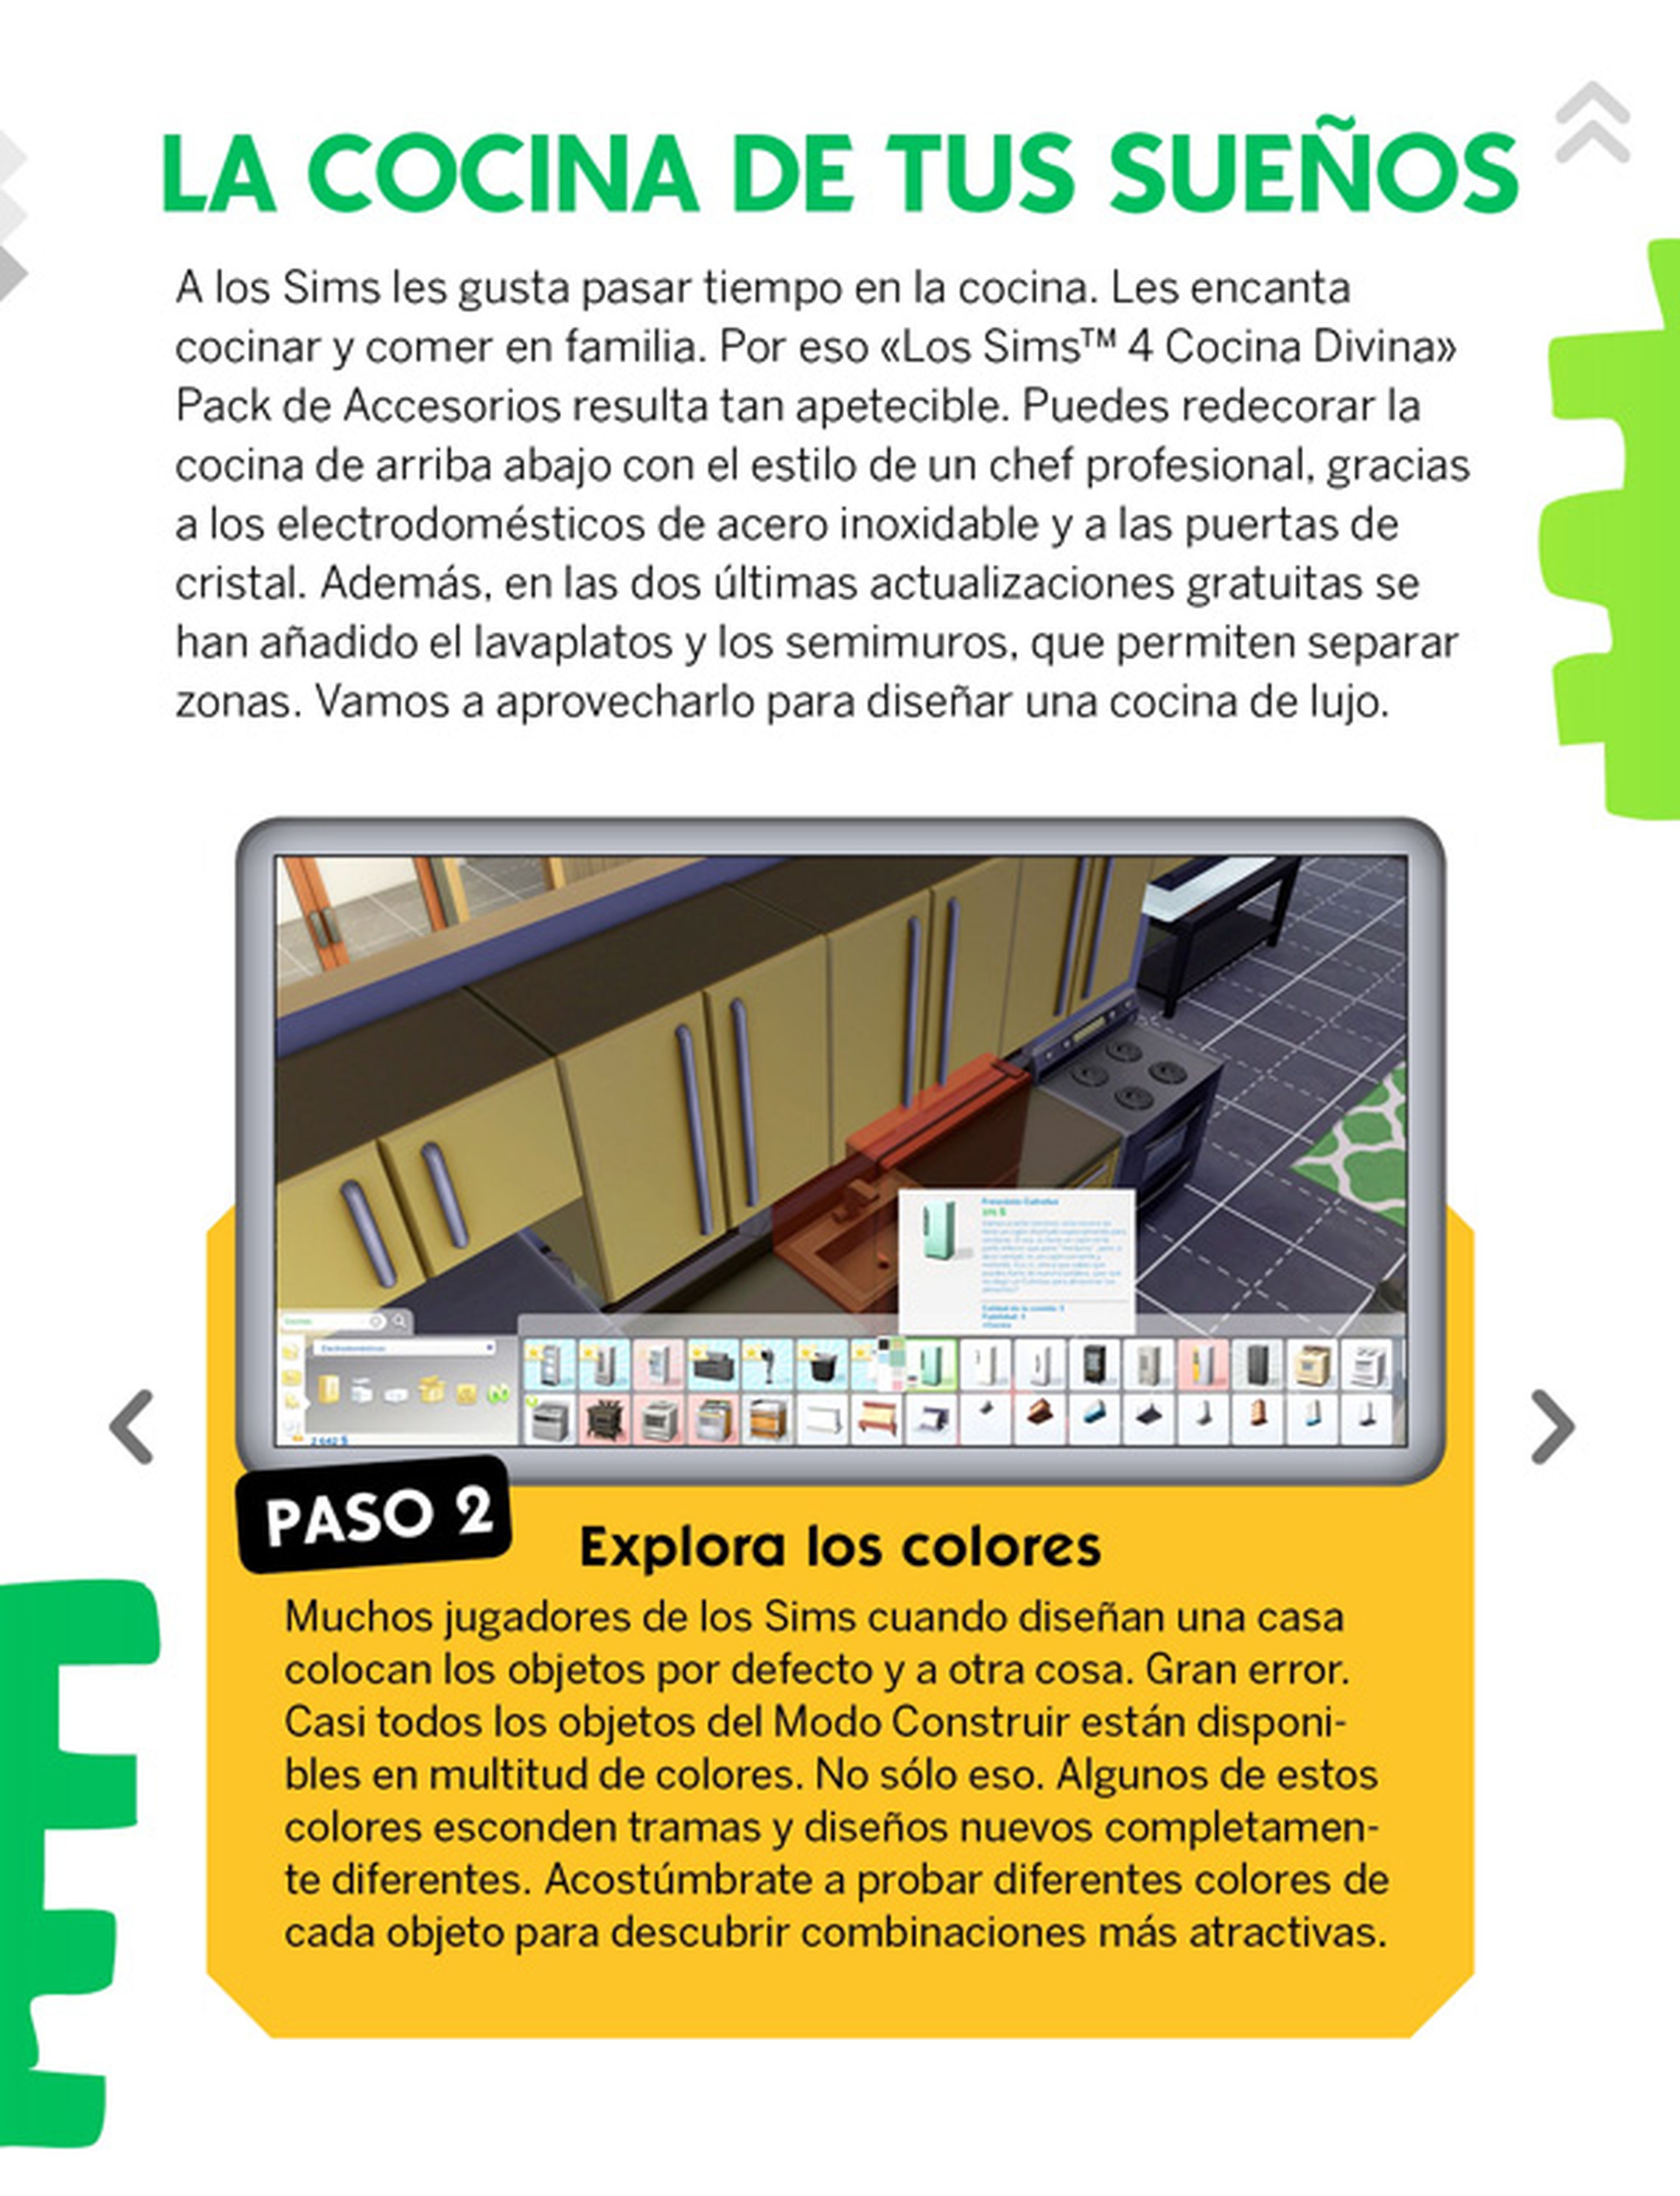 ¡Ya puedes descargar gratis el número 17 de La Revista Oficial de Los Sims!